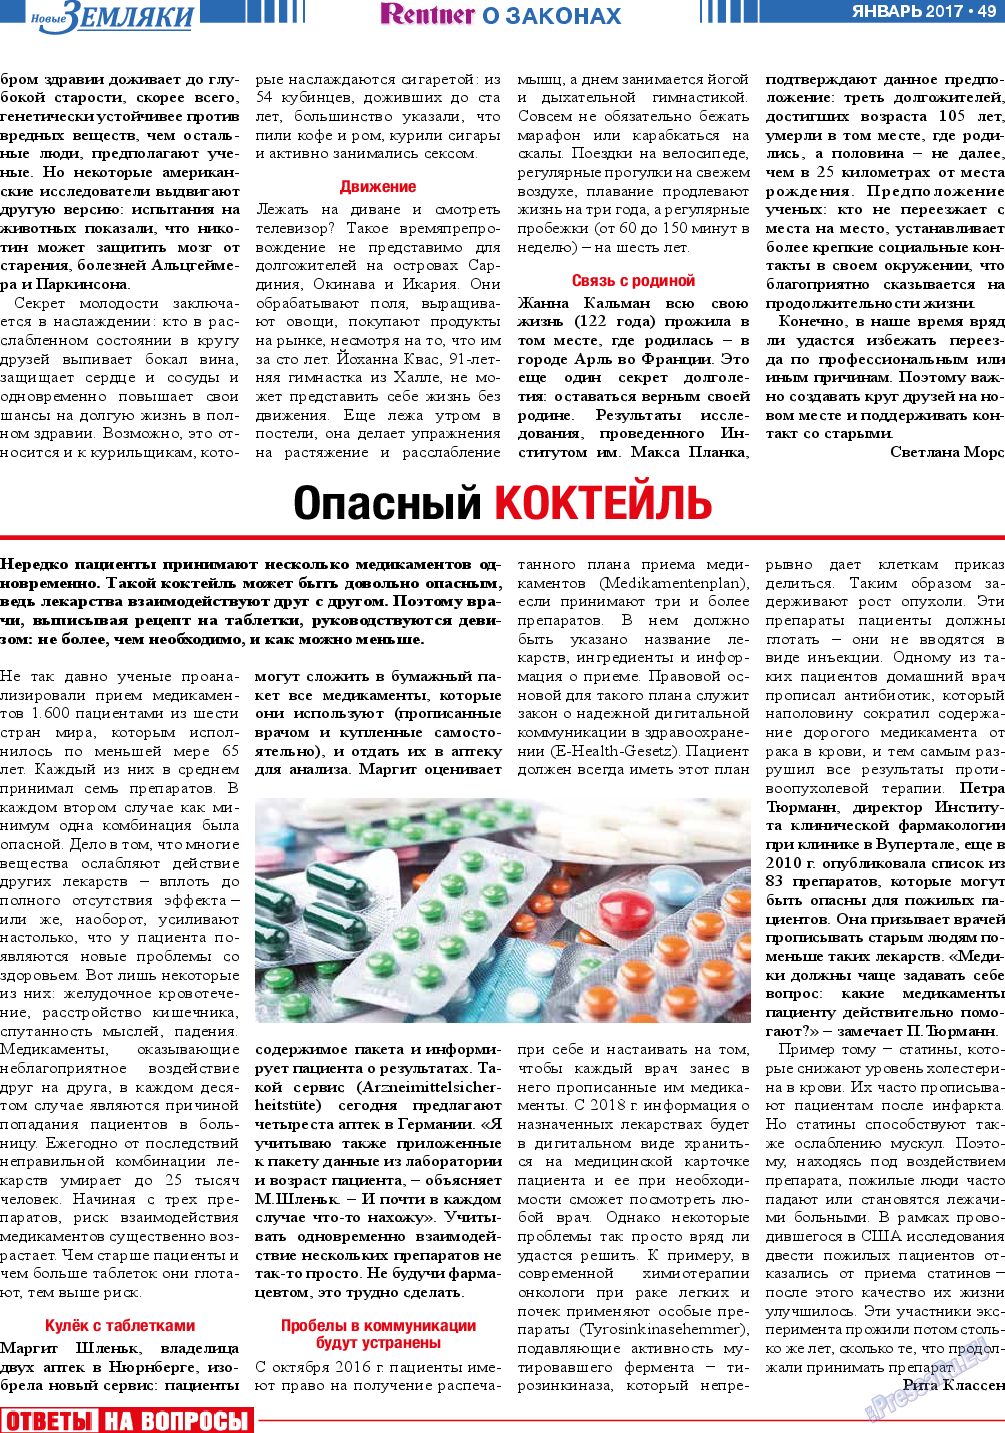 Новые Земляки, газета. 2017 №1 стр.49